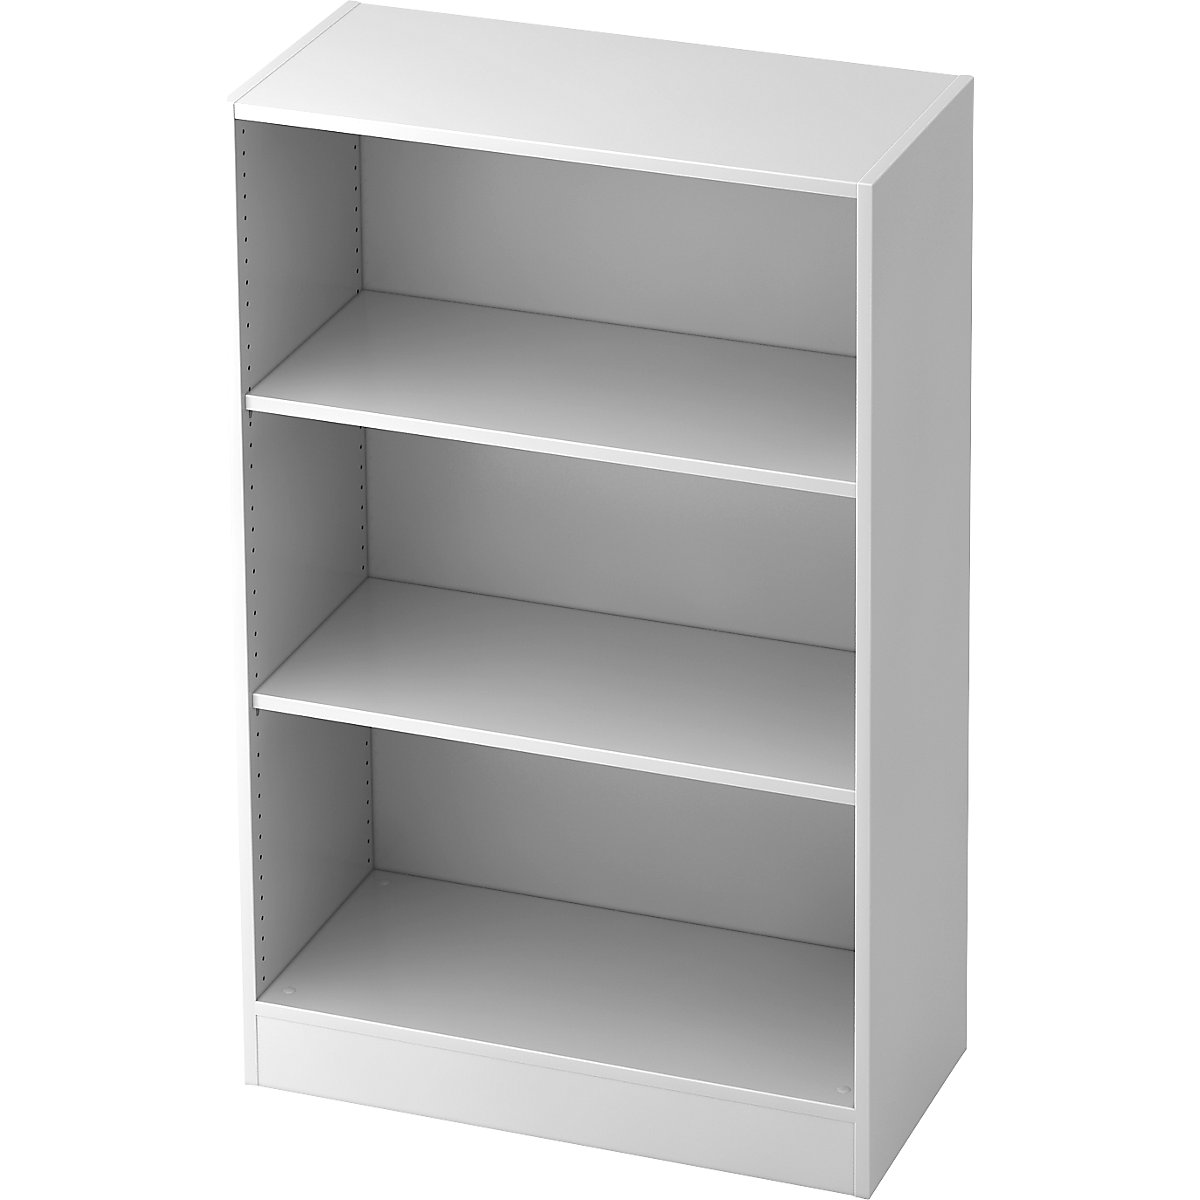 Shelf unit, height 1270 mm, 2 shelves, white-11